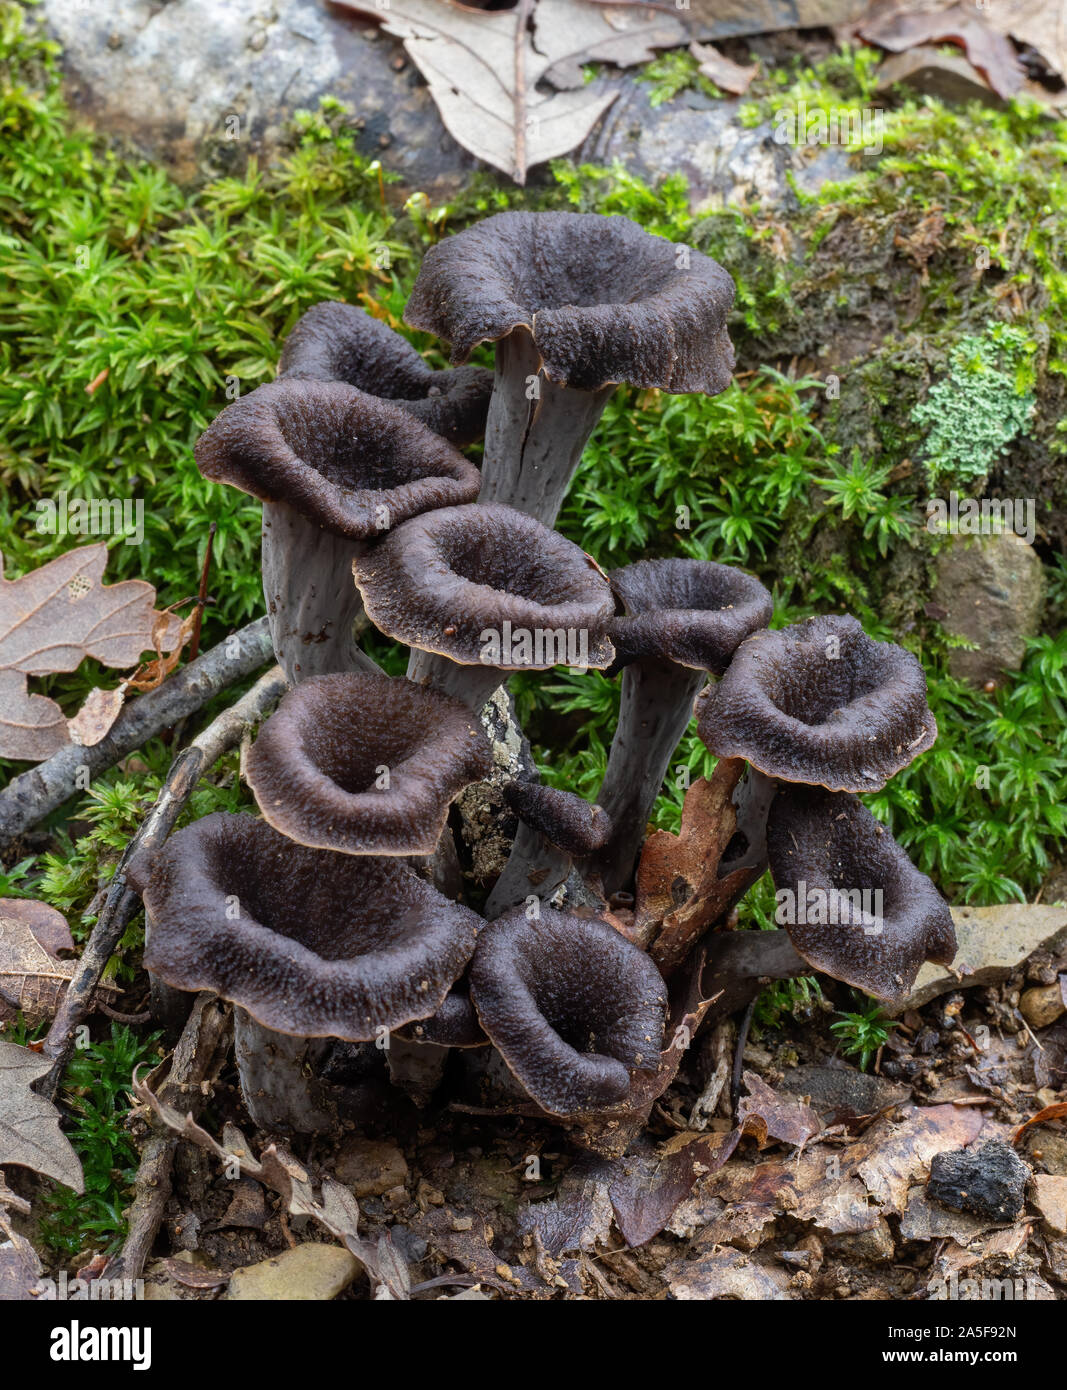 Craterellus cornucopioides i funghi commestibili che crescono in natura.  Aka corno dell'abbondanza, chanterelle nero, nero tromba etc Foto stock -  Alamy